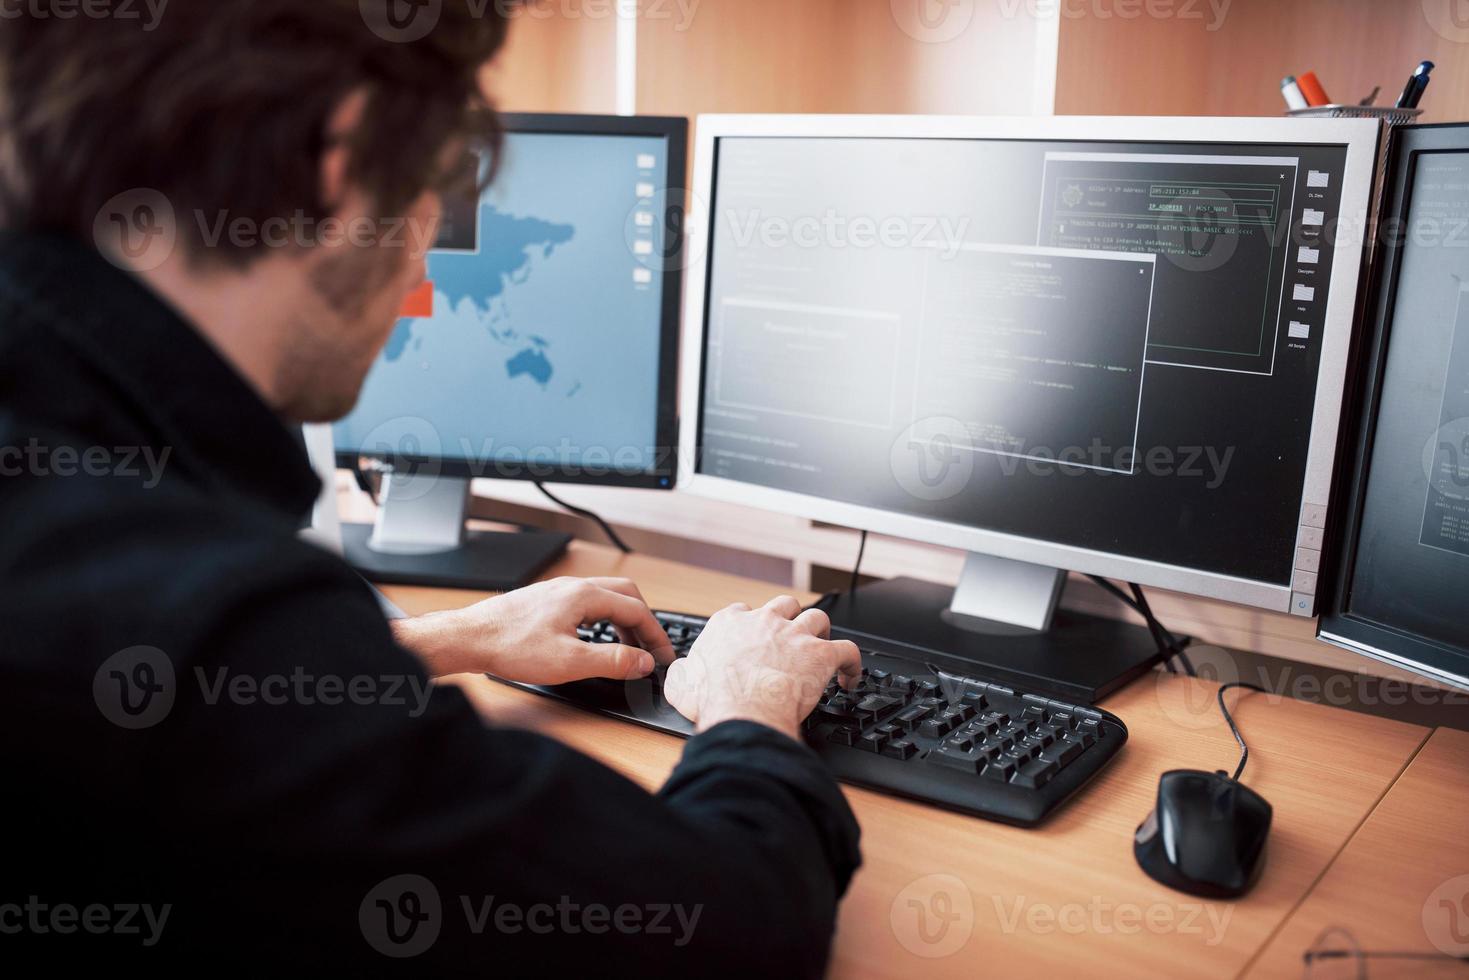 el joven y peligroso pirata informático destruye los servicios gubernamentales al descargar datos confidenciales y activar virus. un hombre usa una computadora portátil con muchos monitores foto